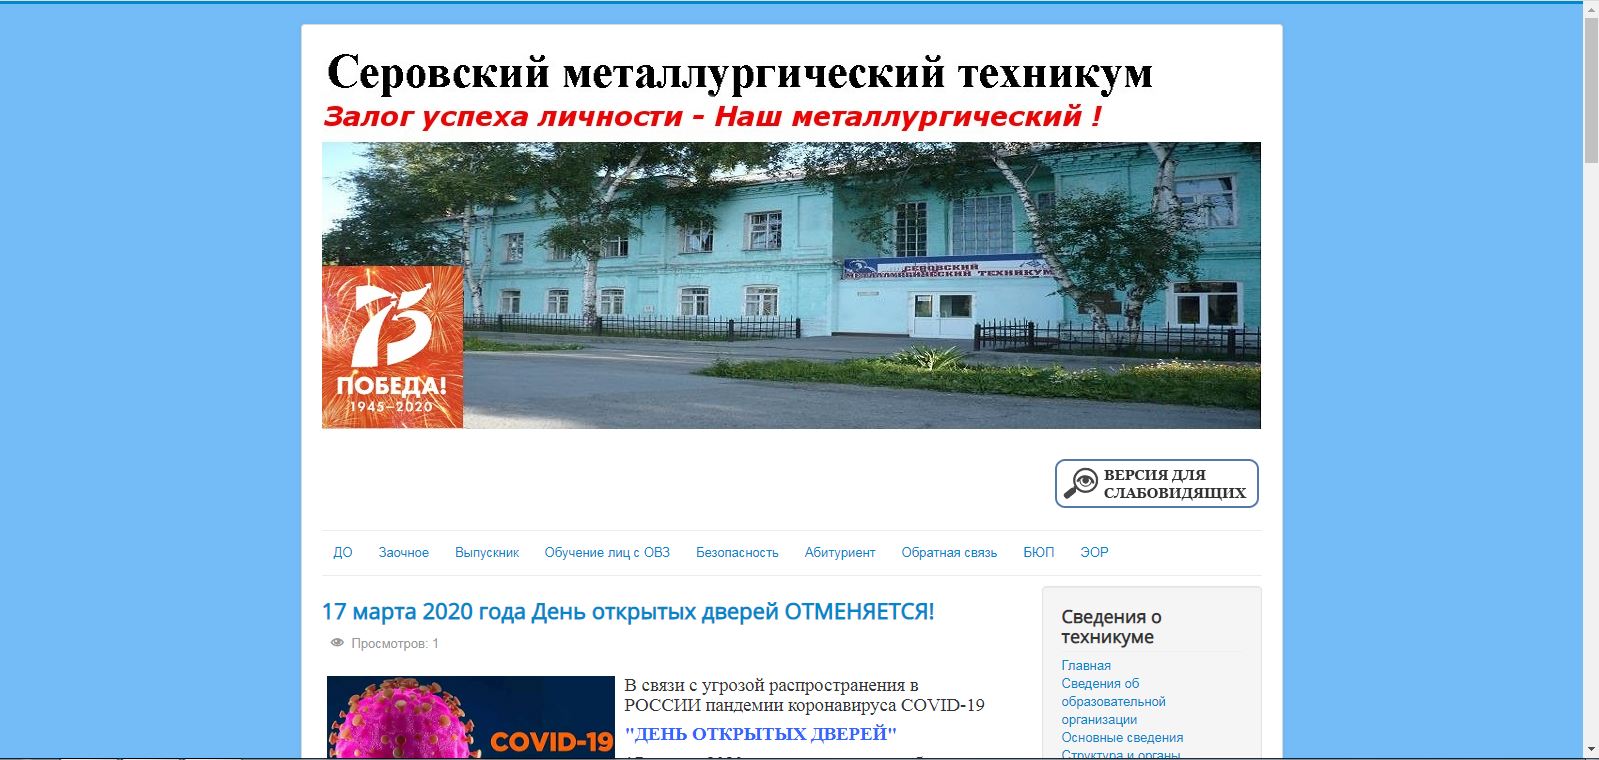 Сайт самарского металлургического колледжа